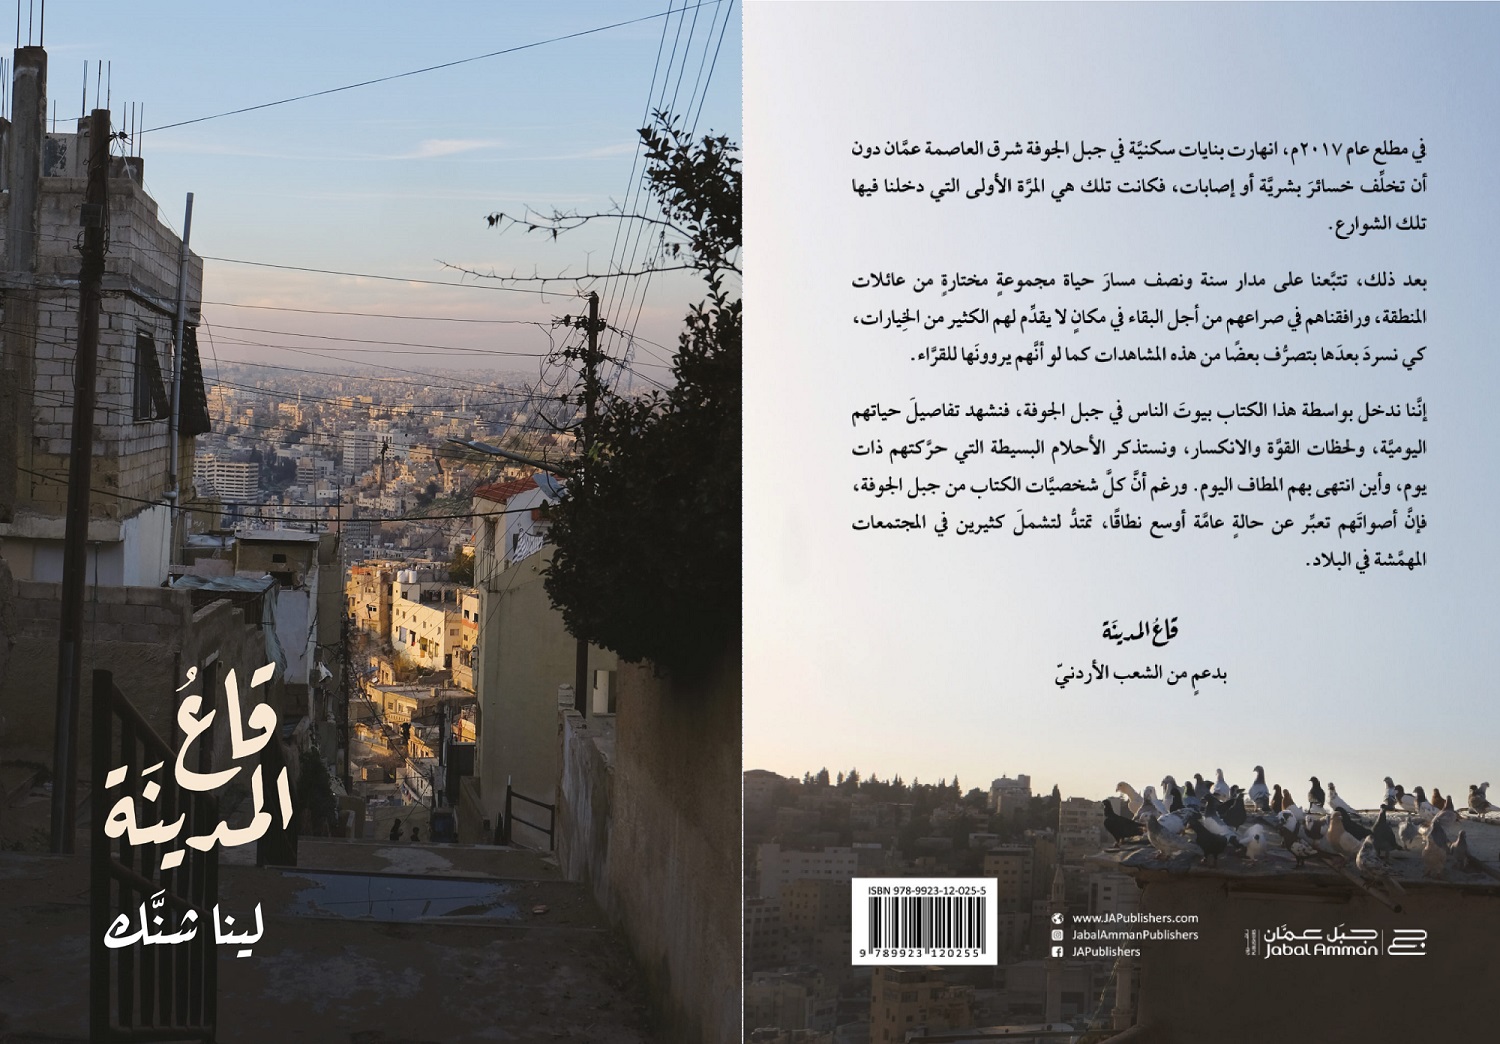 الغلاف الخلفي والأمامي لكتاب "قاع المدينة" حيث تشرح لينا أبرز معالم هذا المشروع، وتضع بشكل واضح اسم الممول الرئيسي للكتاب "بدعم من الشعب الأردني" (ناشرون، جبل عمان)